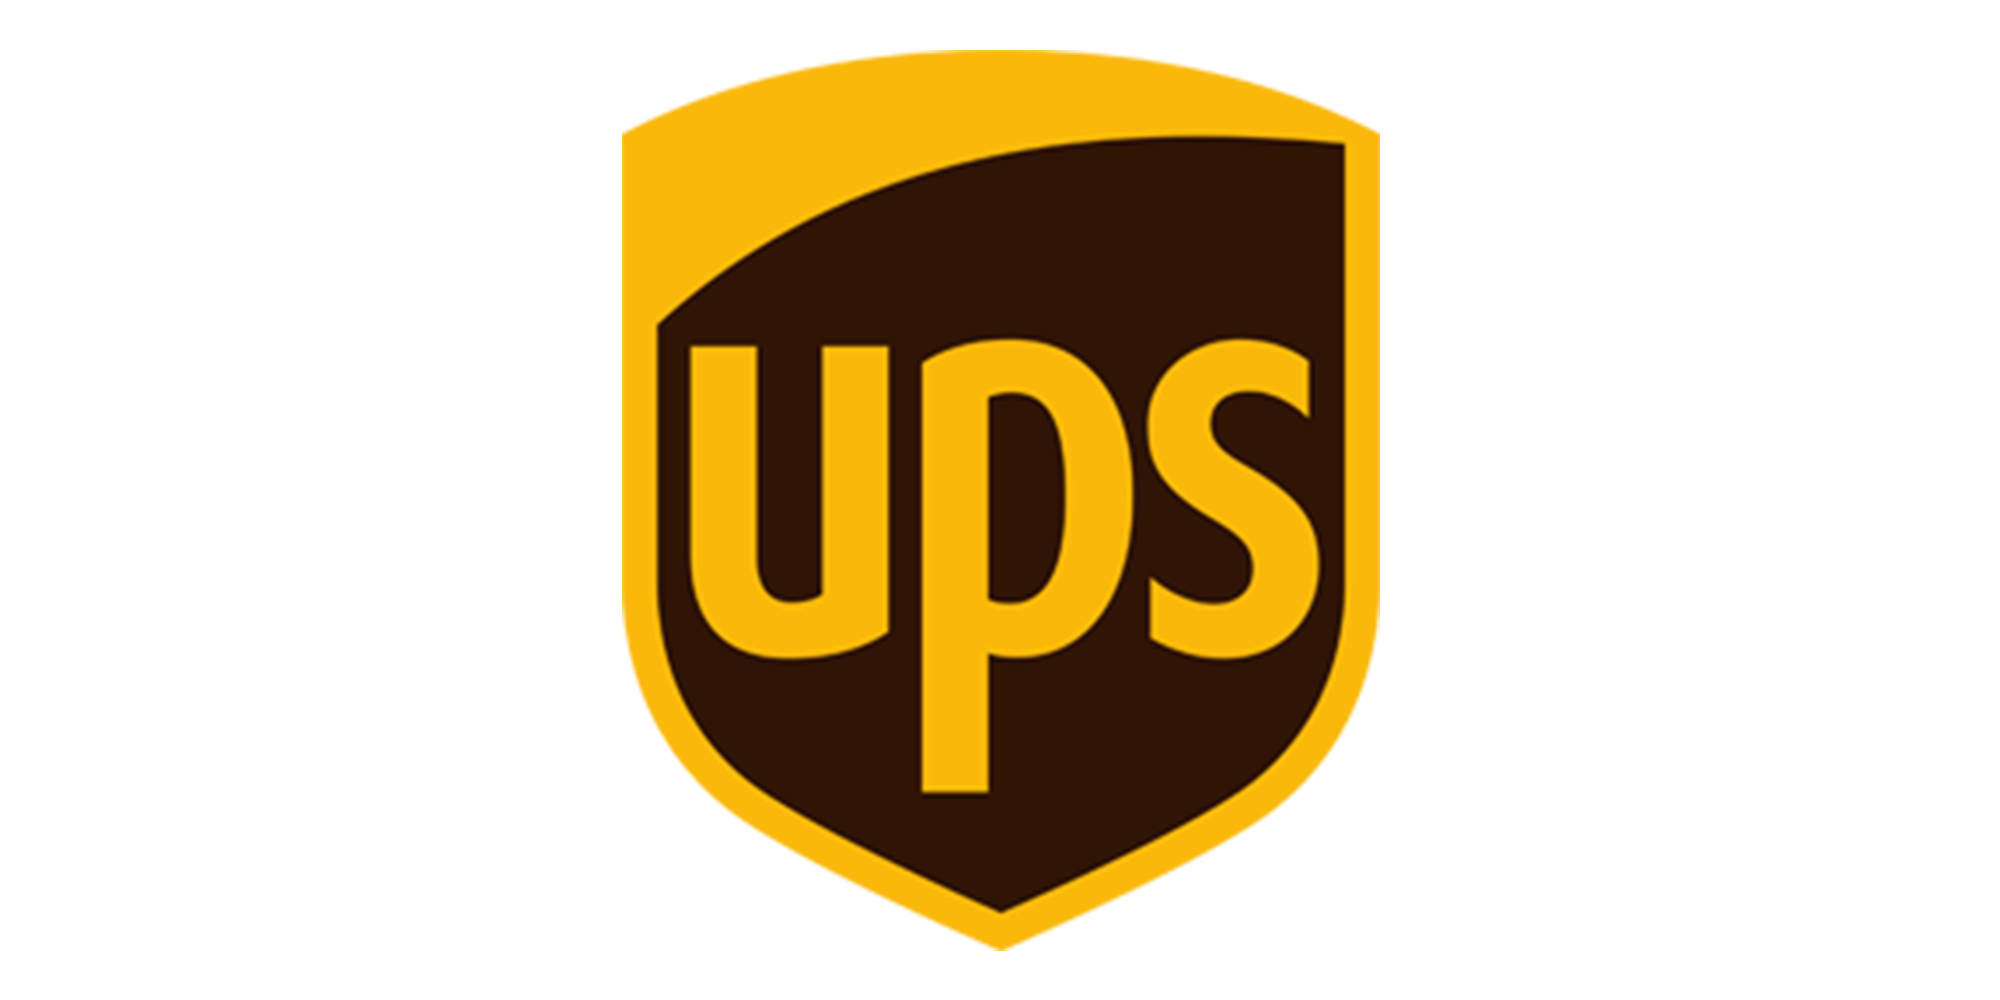 UPS LOGO